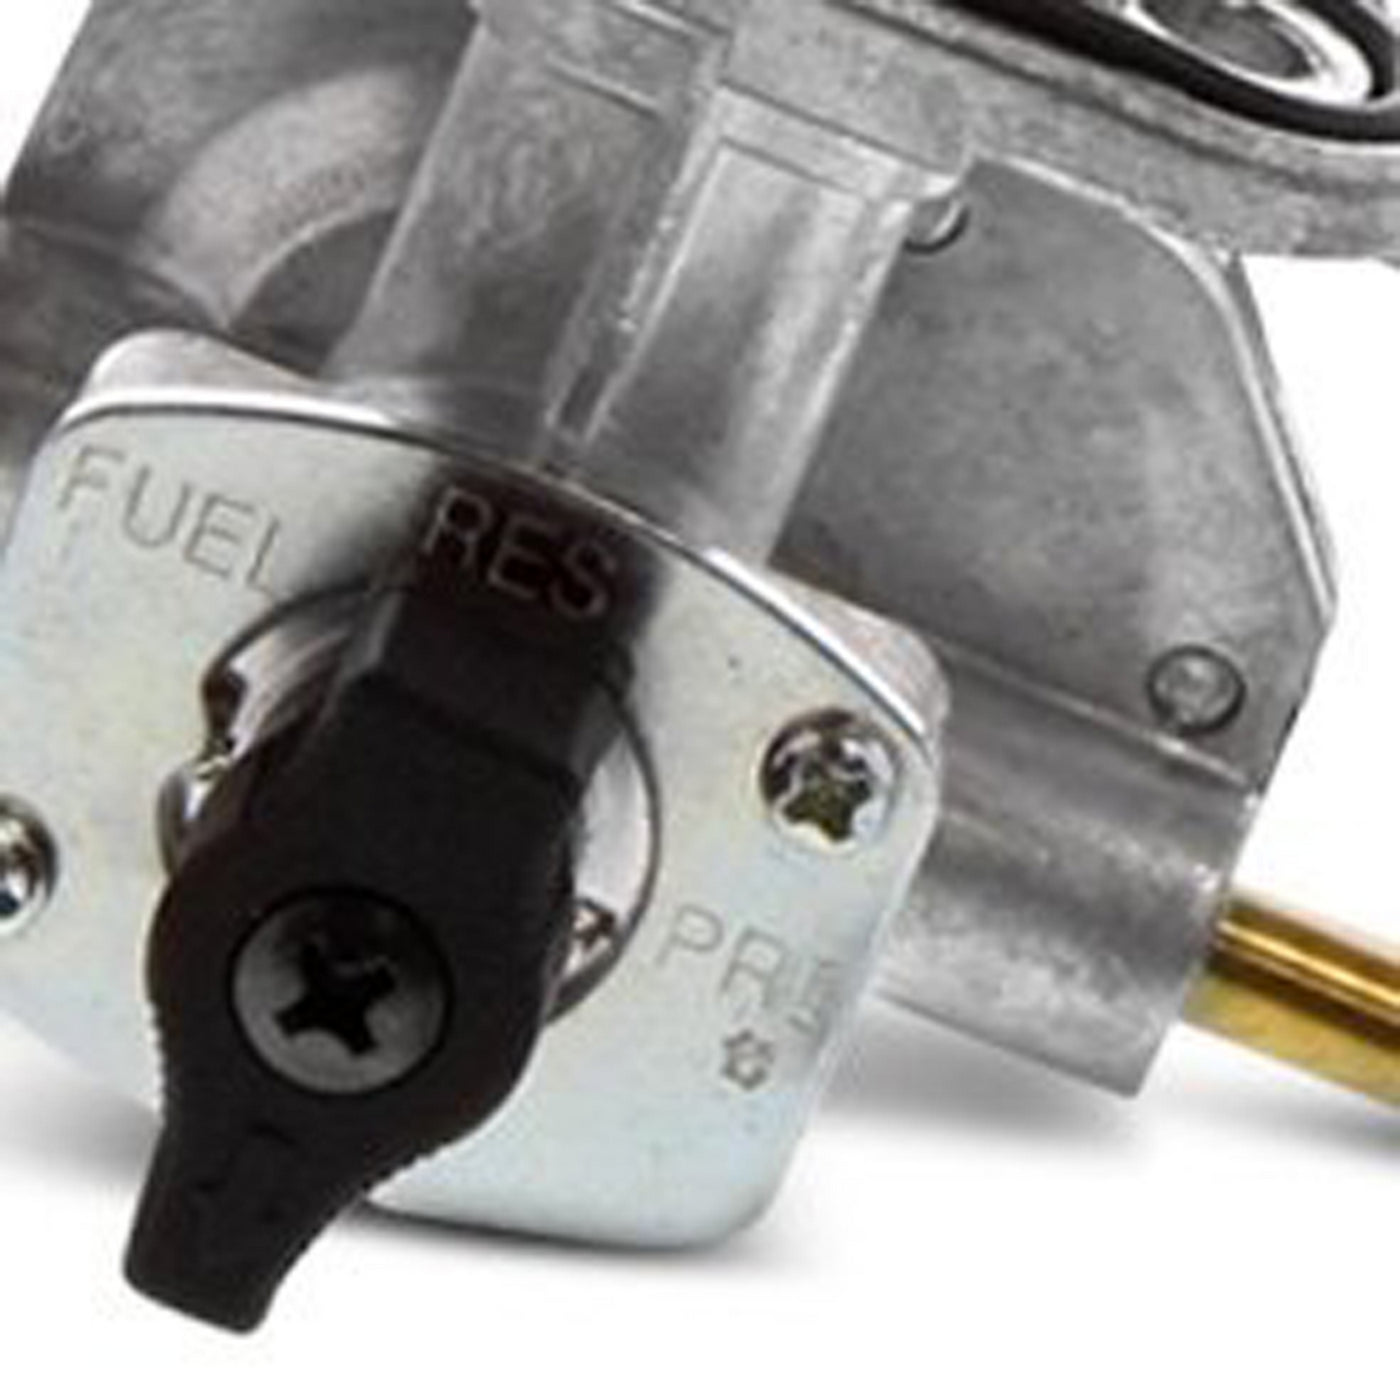 Fuel Star FS101-0119 Fuel Valve Kit #FS101-0119